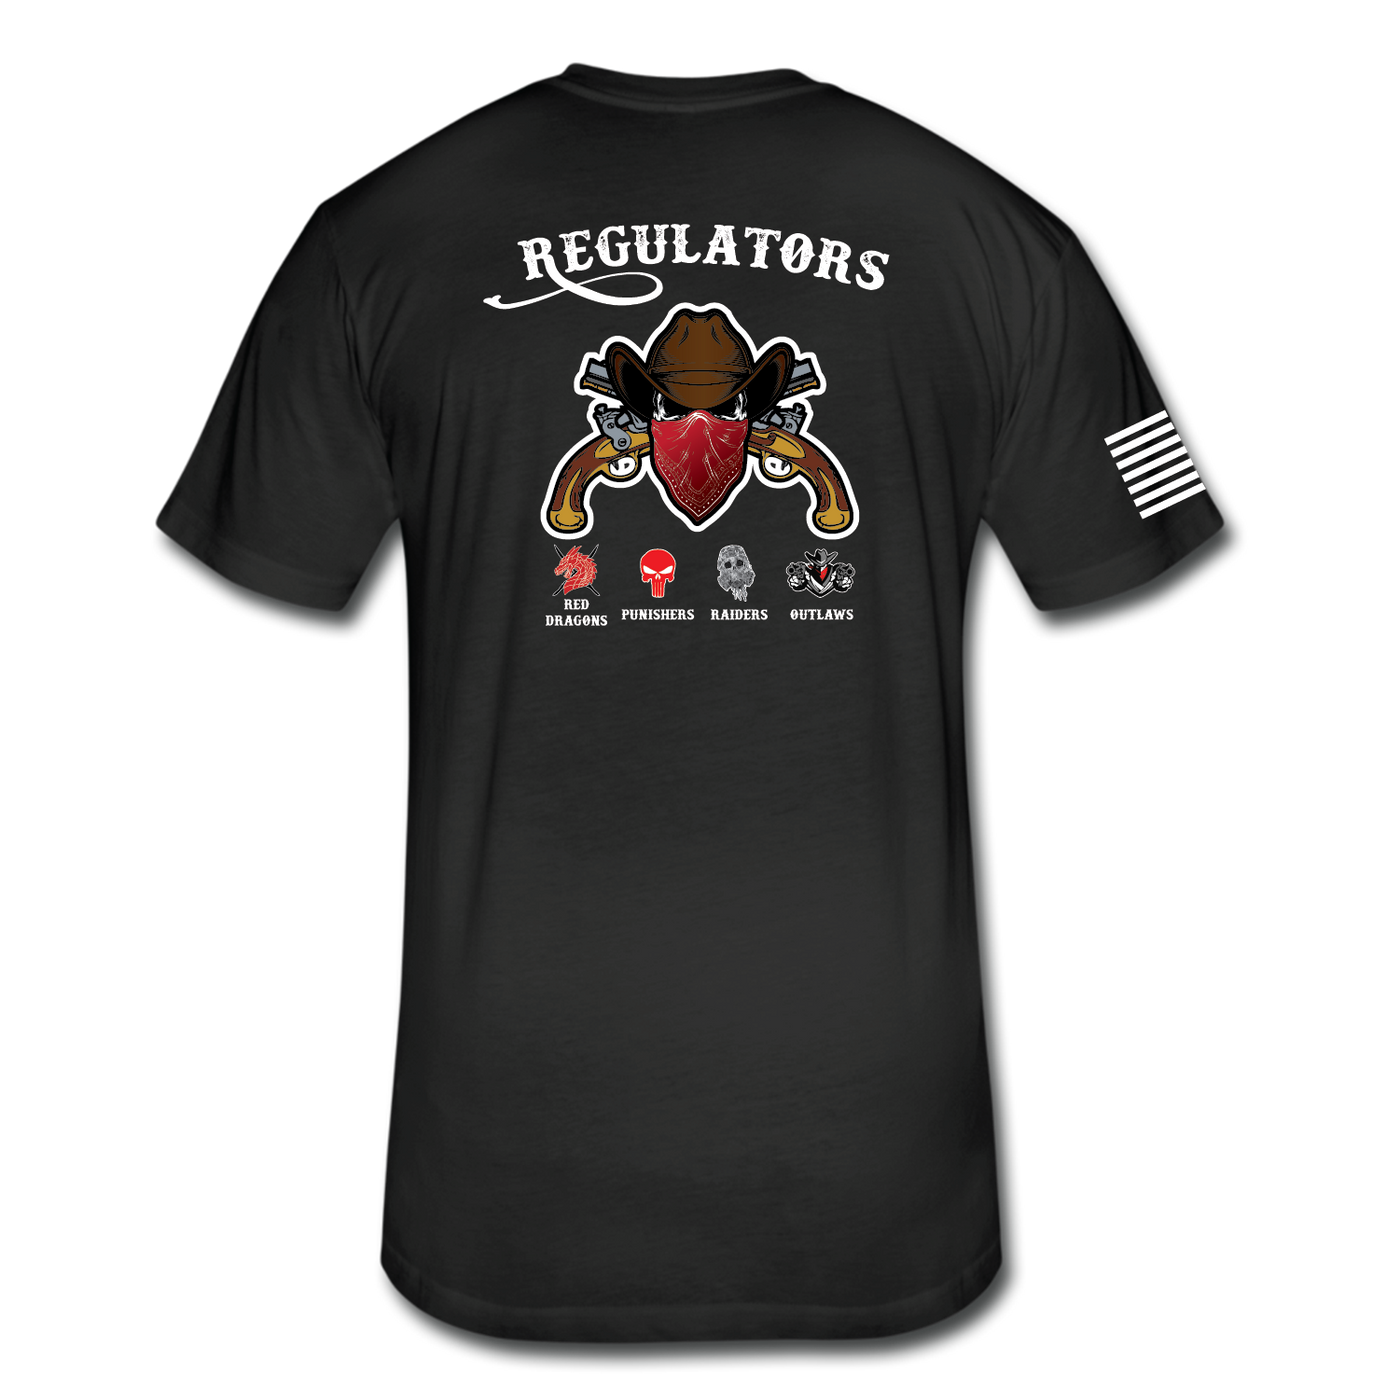 546th MP Company “Regulators” T-Shirt